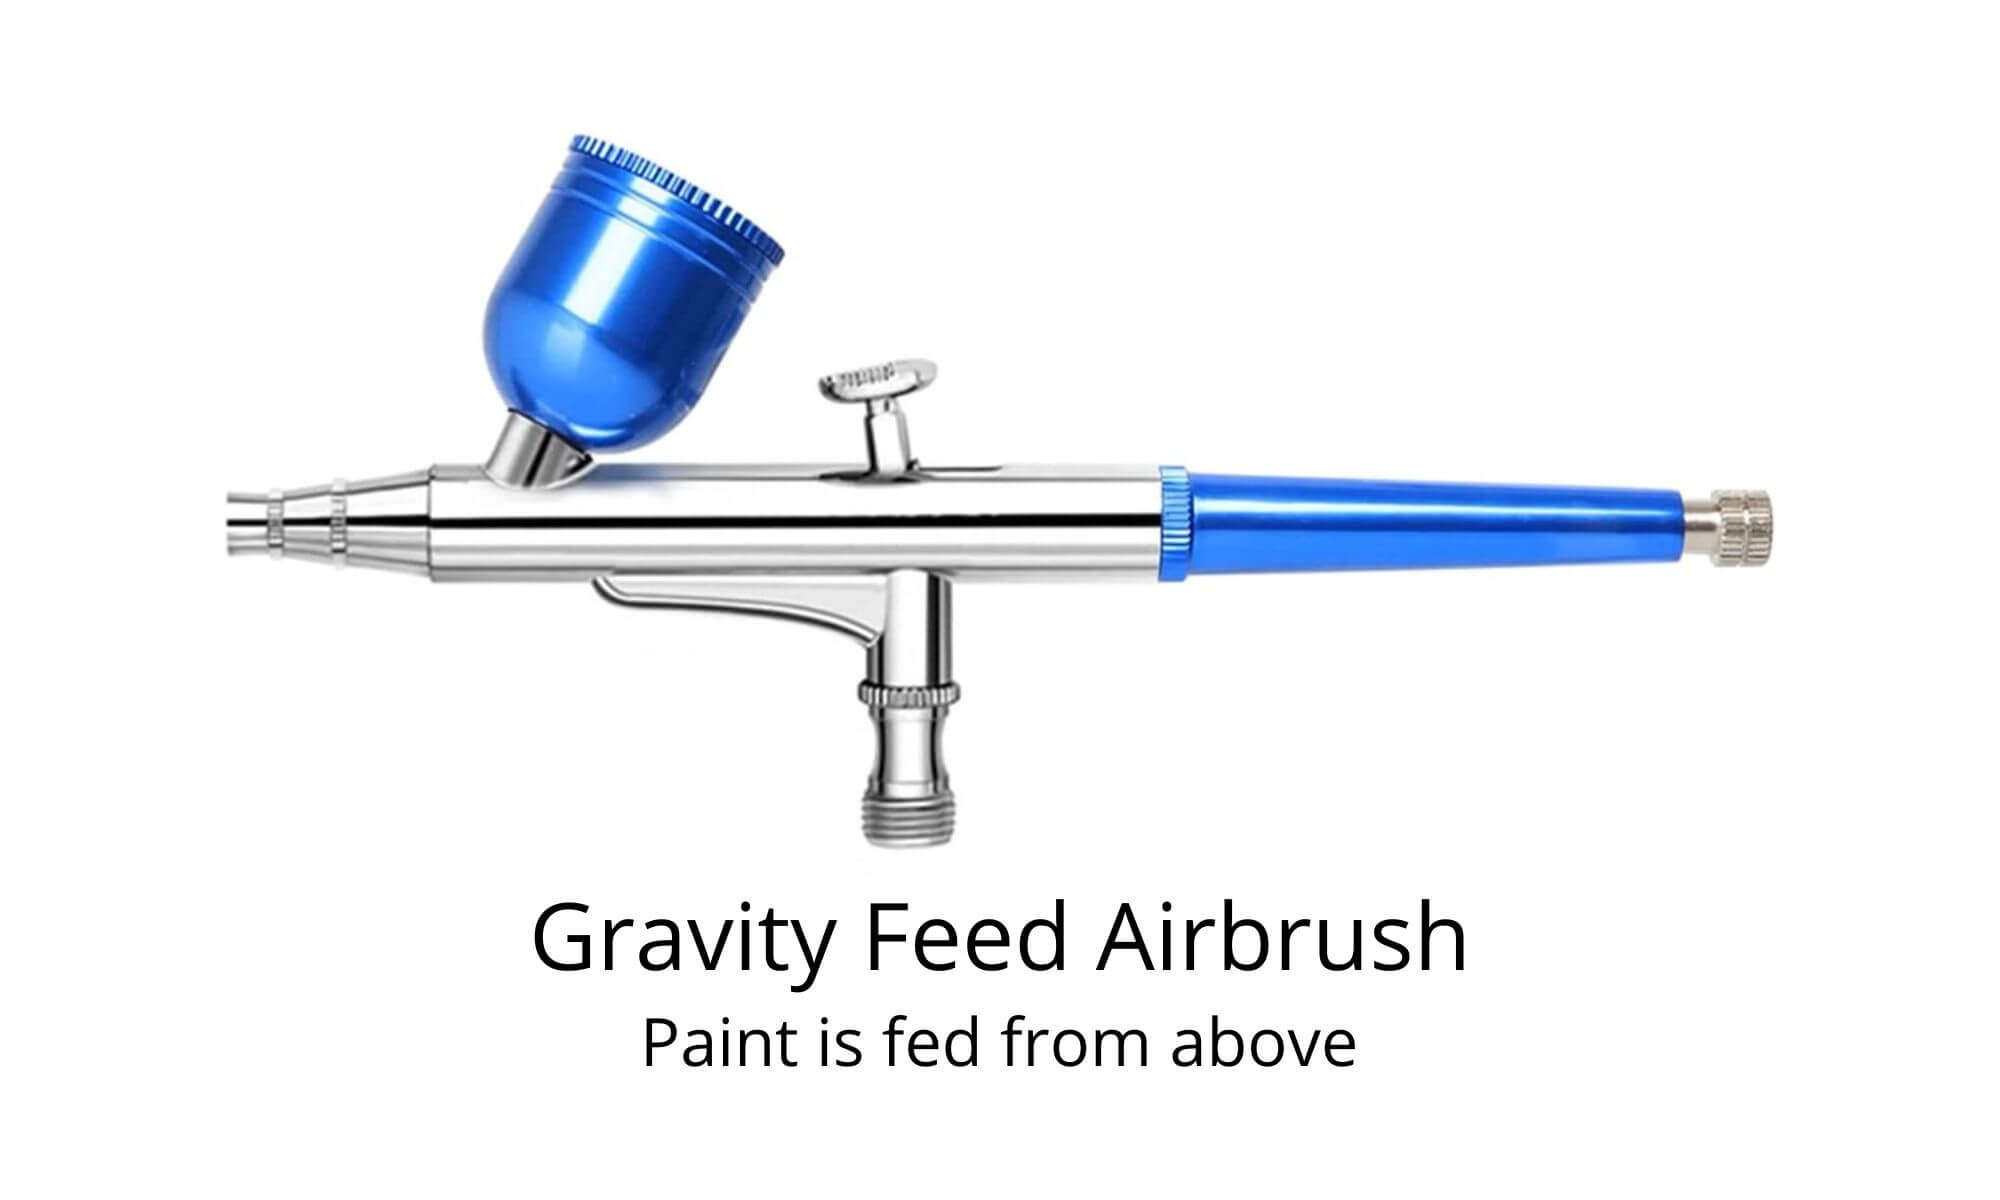 Gravity airbrushes